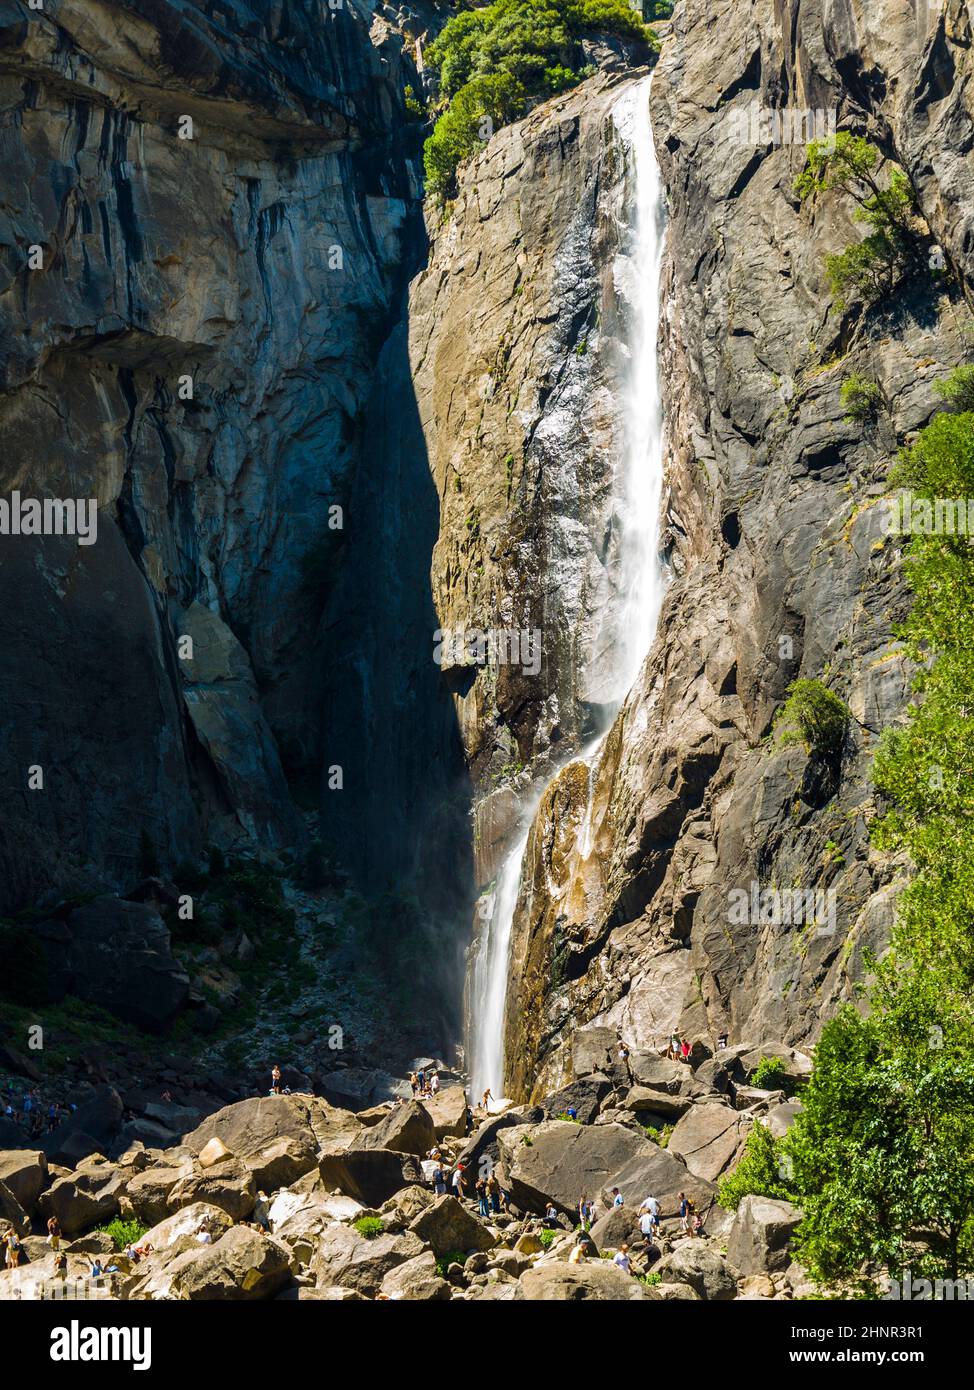 Les touristes rafraîchissent leurs jambes dans le lac de la chute d'eau inférieure de Yosemite Banque D'Images